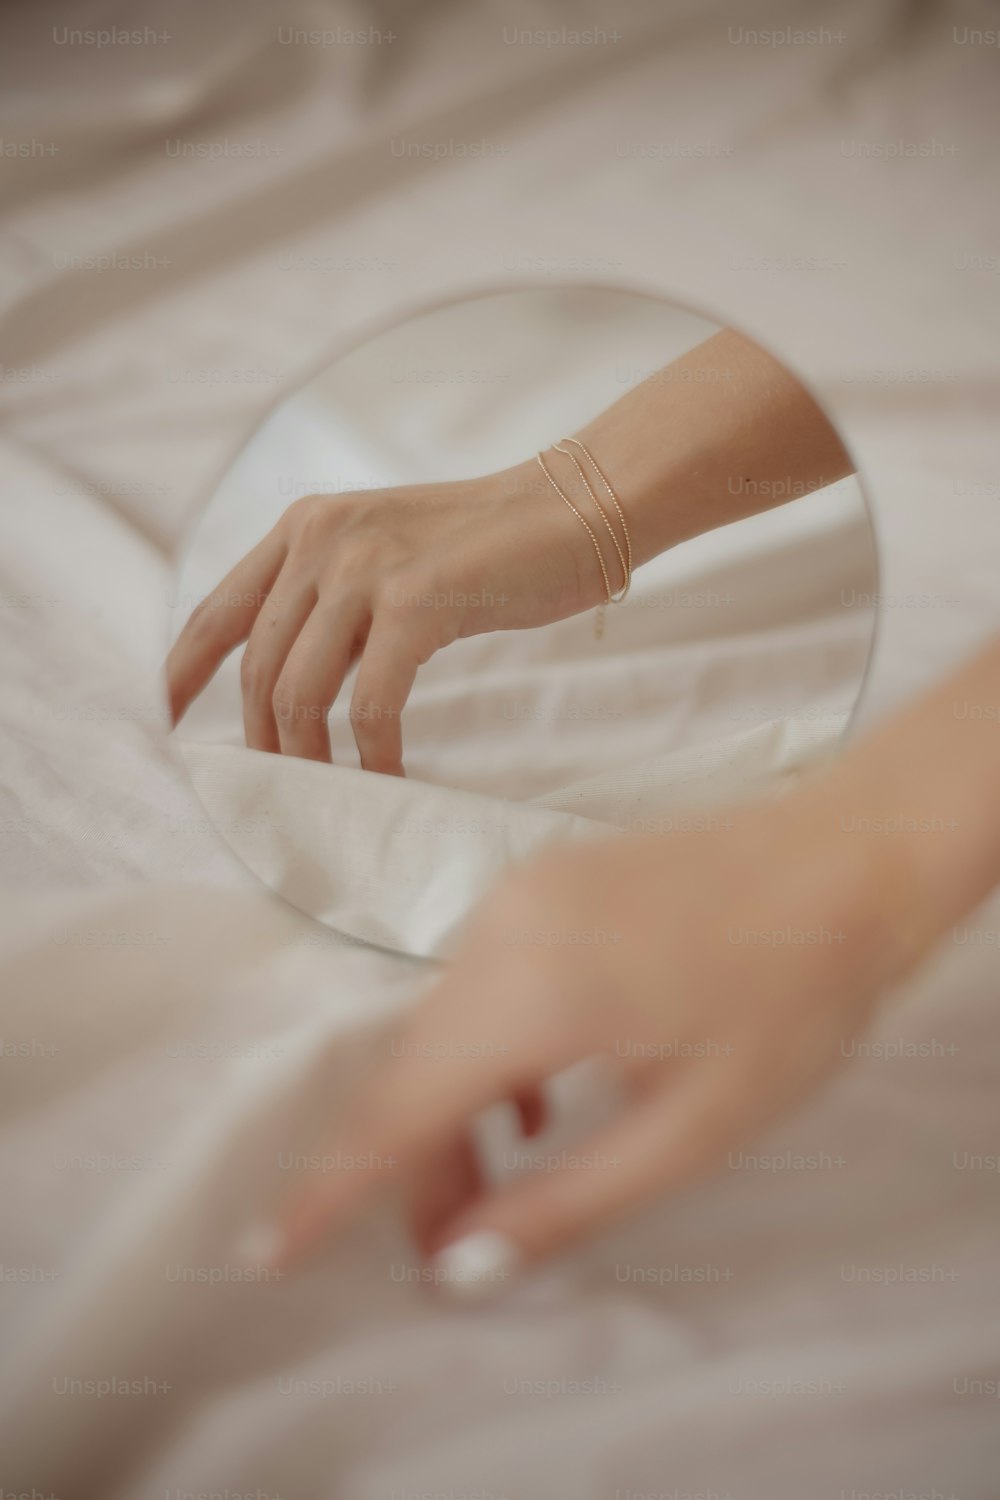 Die Hand einer Person berührt einen Spiegel auf einem Bett